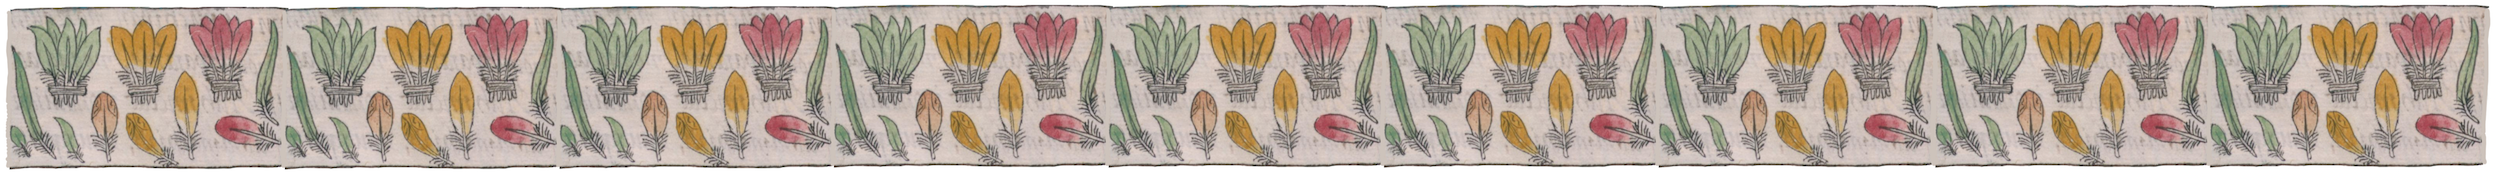 Florentine Codex feathers banner 2